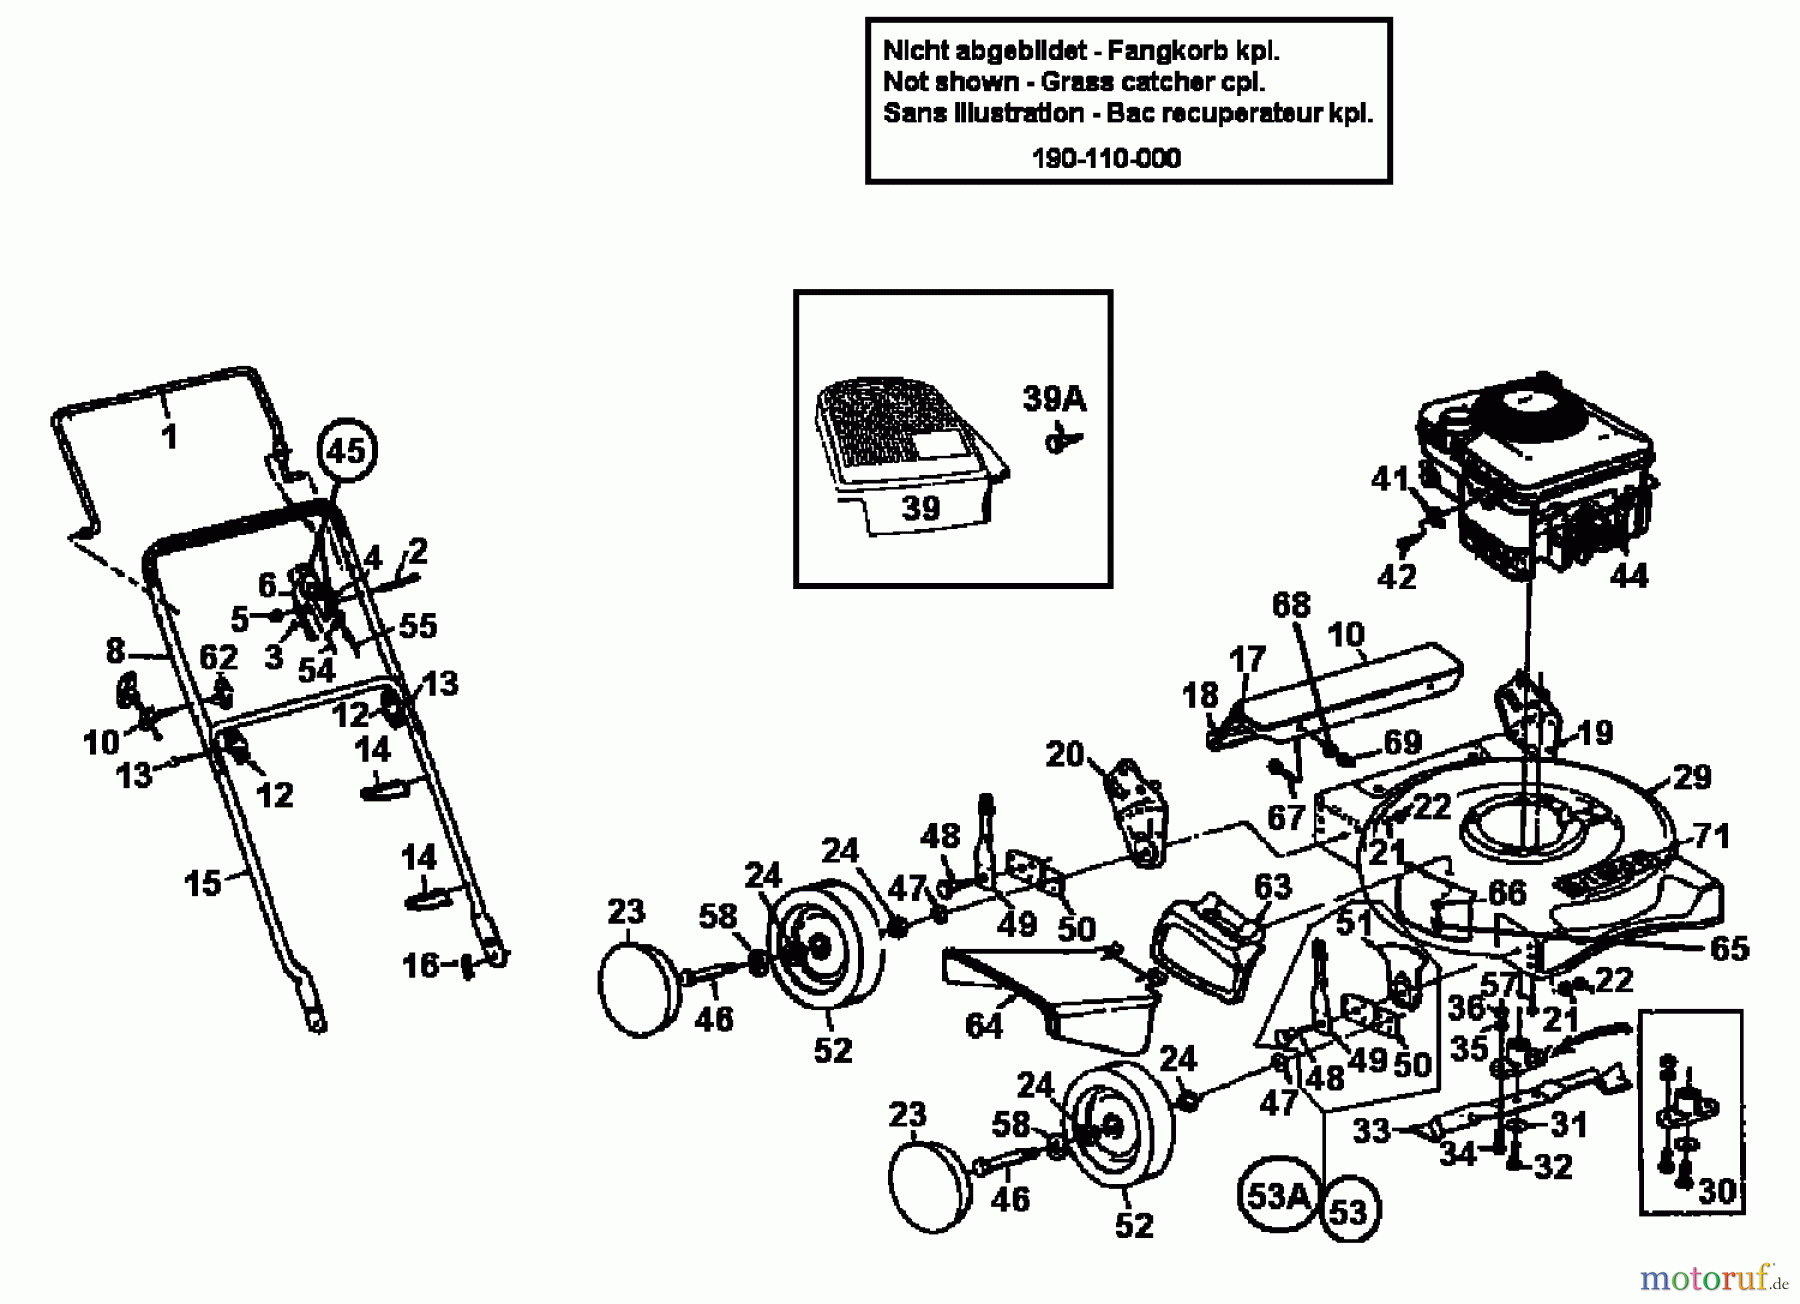  Gutbrod Petrol mower SB 46 116-704A604  (1996) Basic machine